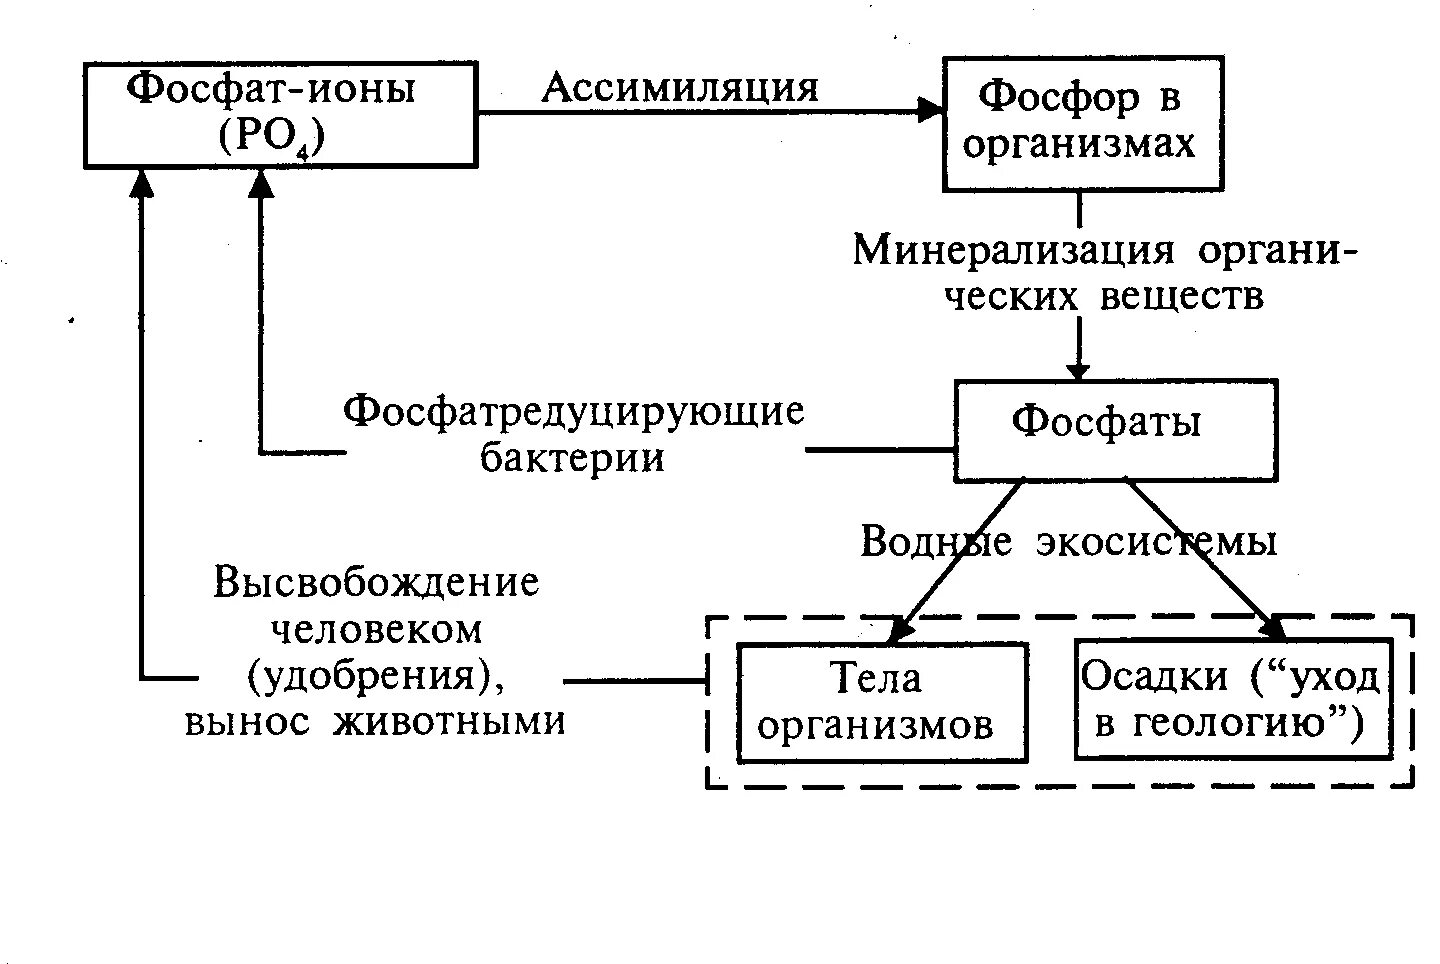 Превращение соединений азота. Биохимический цикл фосфора схема. Круговорот фосфора в биосфере схема. Круговорот фосфора ( по п. Дювиньо и м. Тангу ). Биогеохимический цикл фосфора схема.